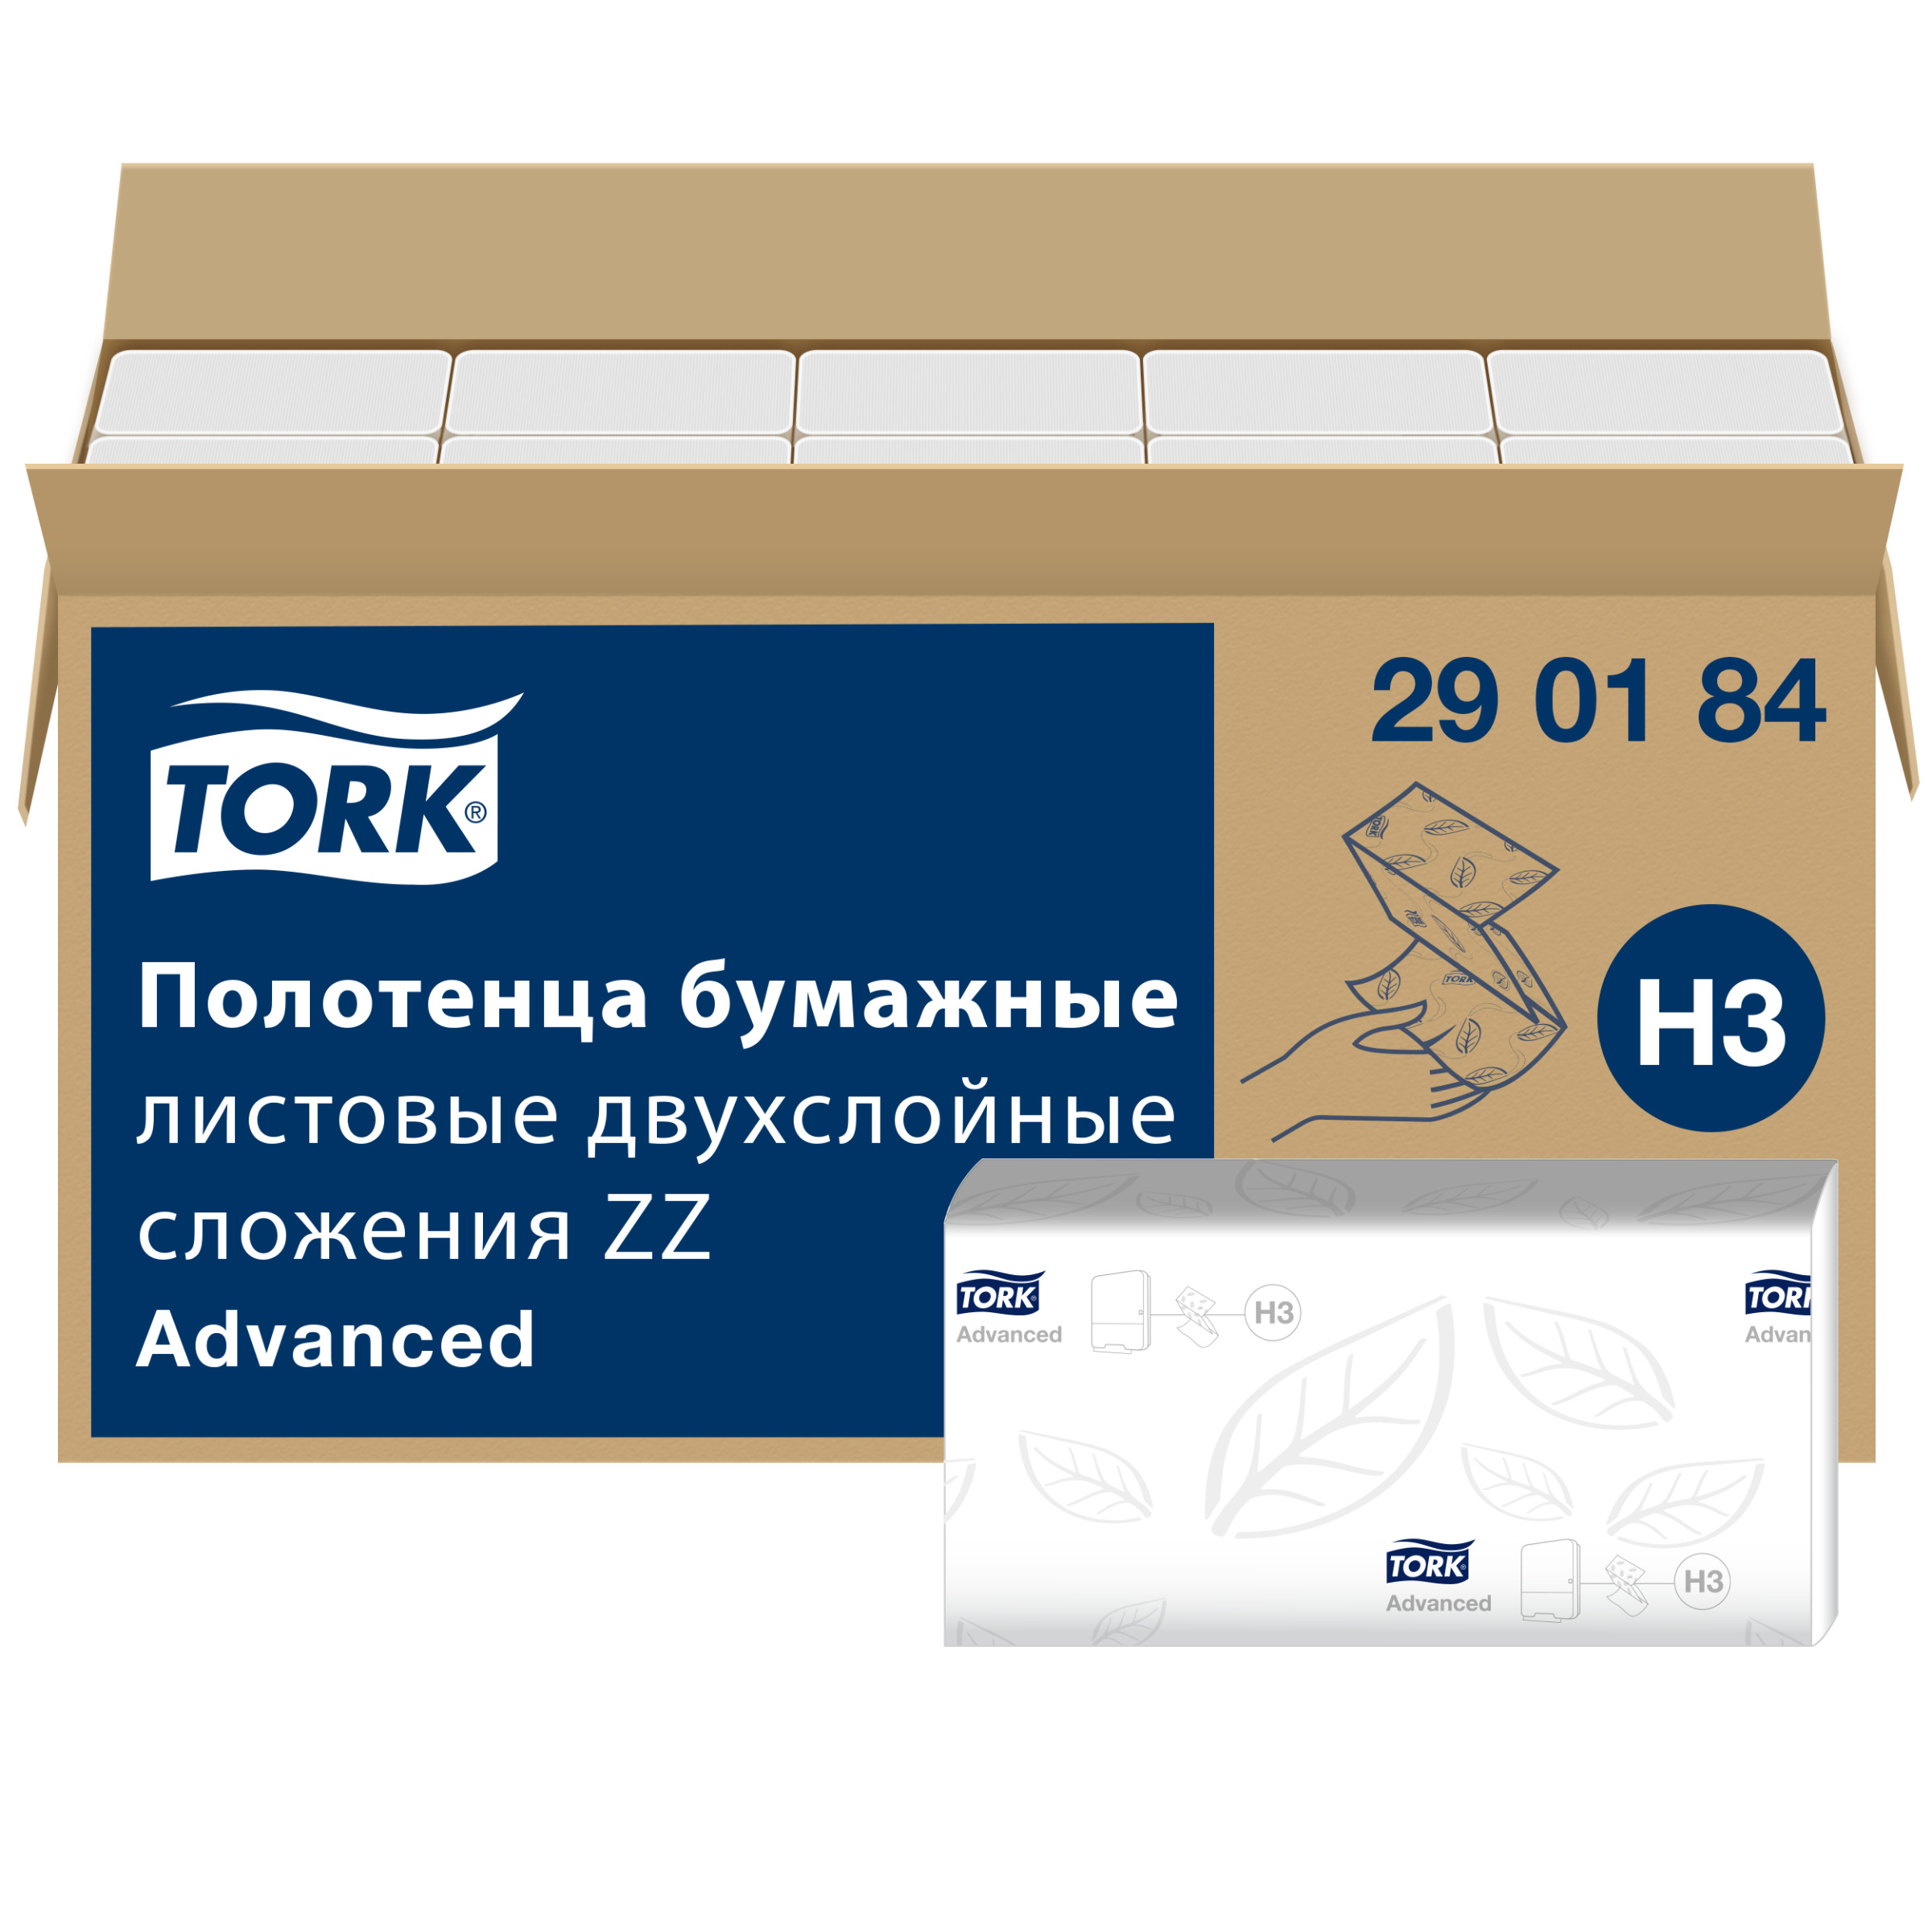 Полотенце tork сложение zz. Торк ZZ 120108. 290184 Торк. Tork h3 Advanced. 290184 Торк полотенца бумажные.